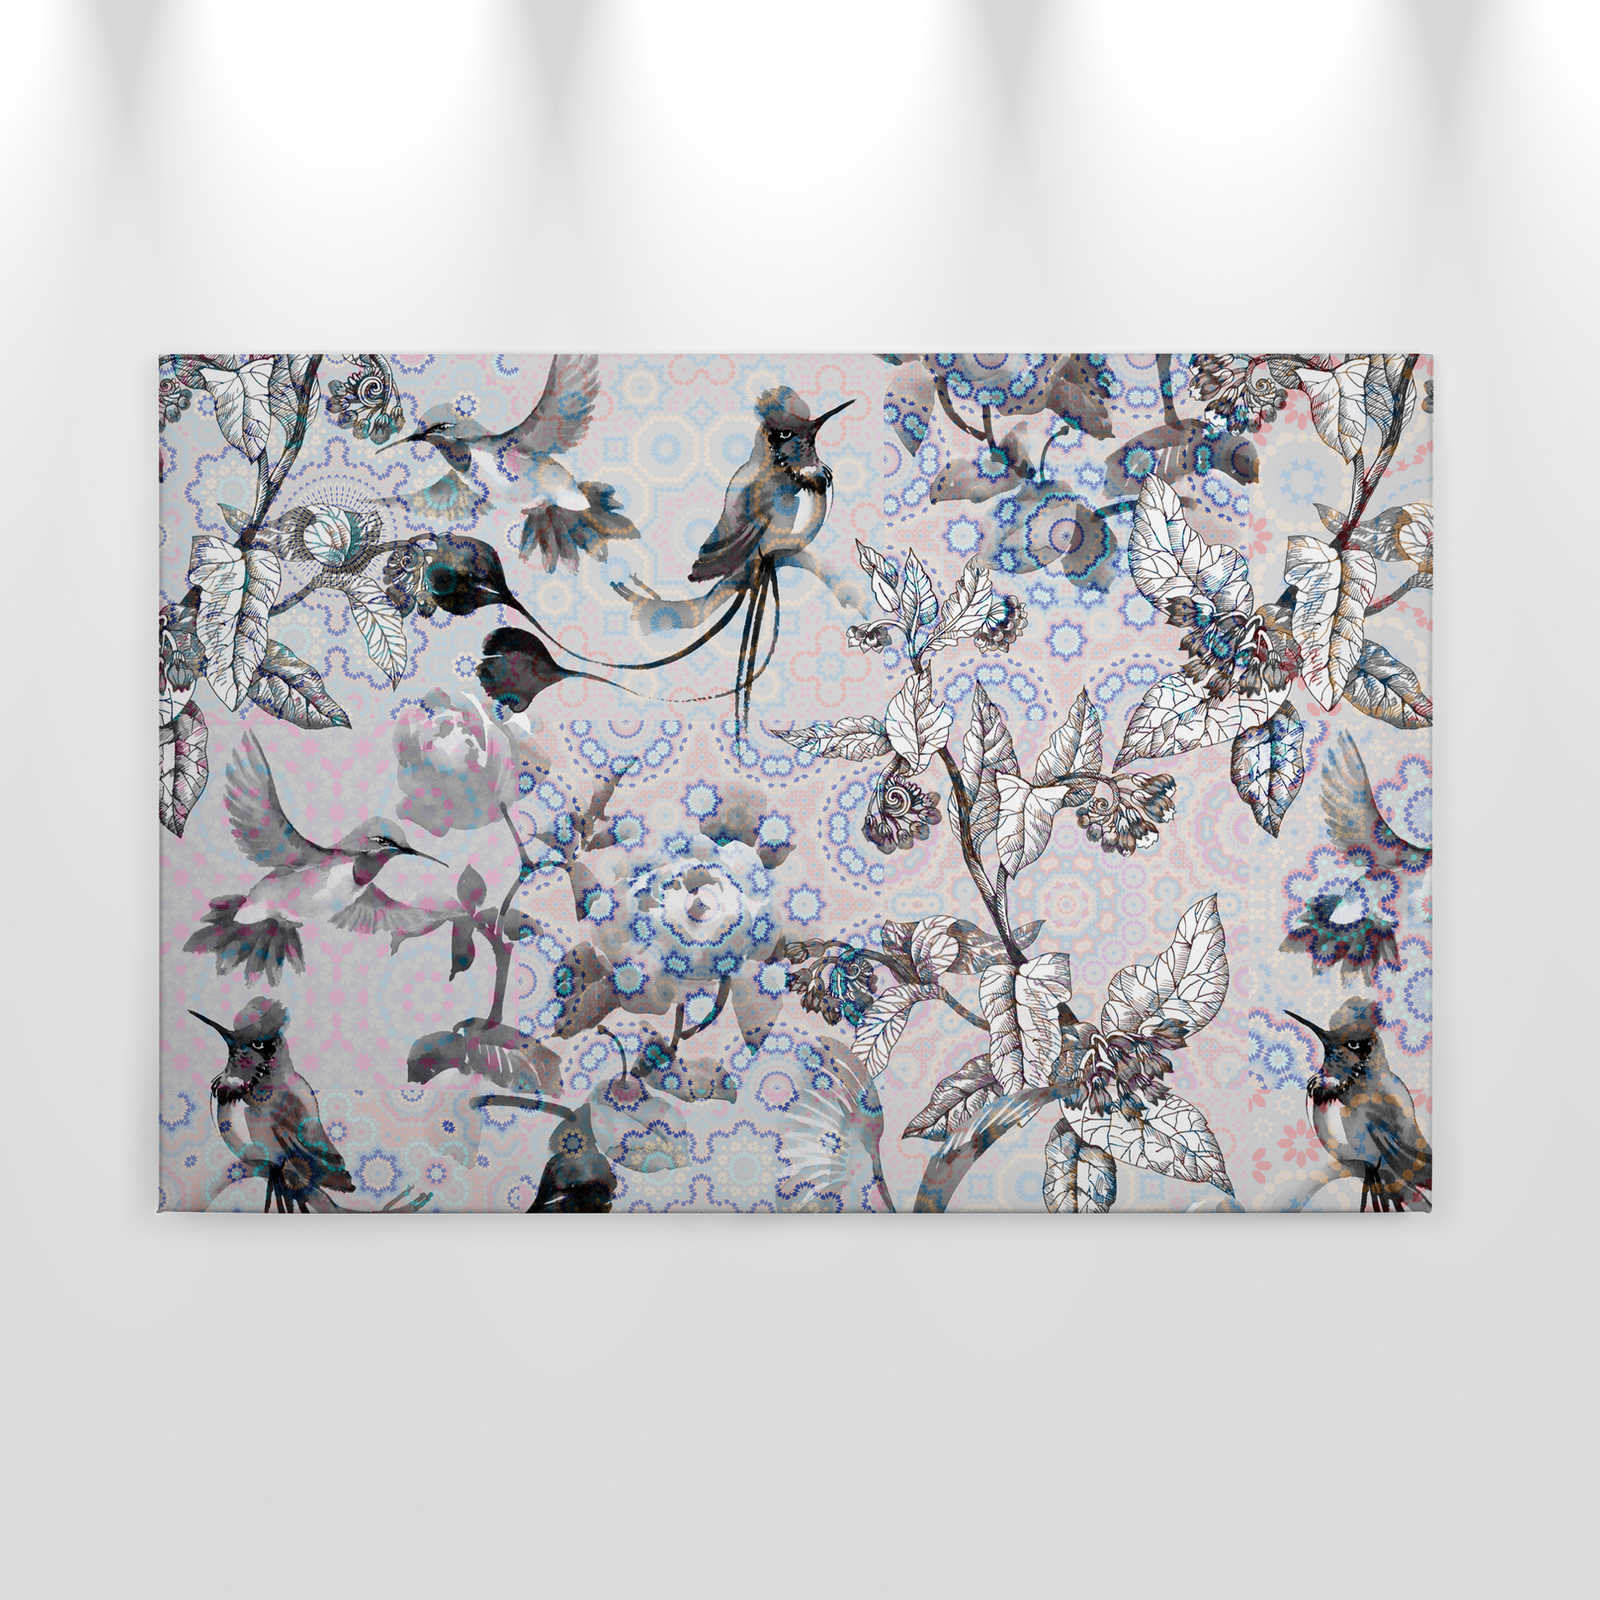             Canvas schilderij Nature Design in collagestijl | exotisch mozaïek 3 - 0,90 m x 0,60 m
        